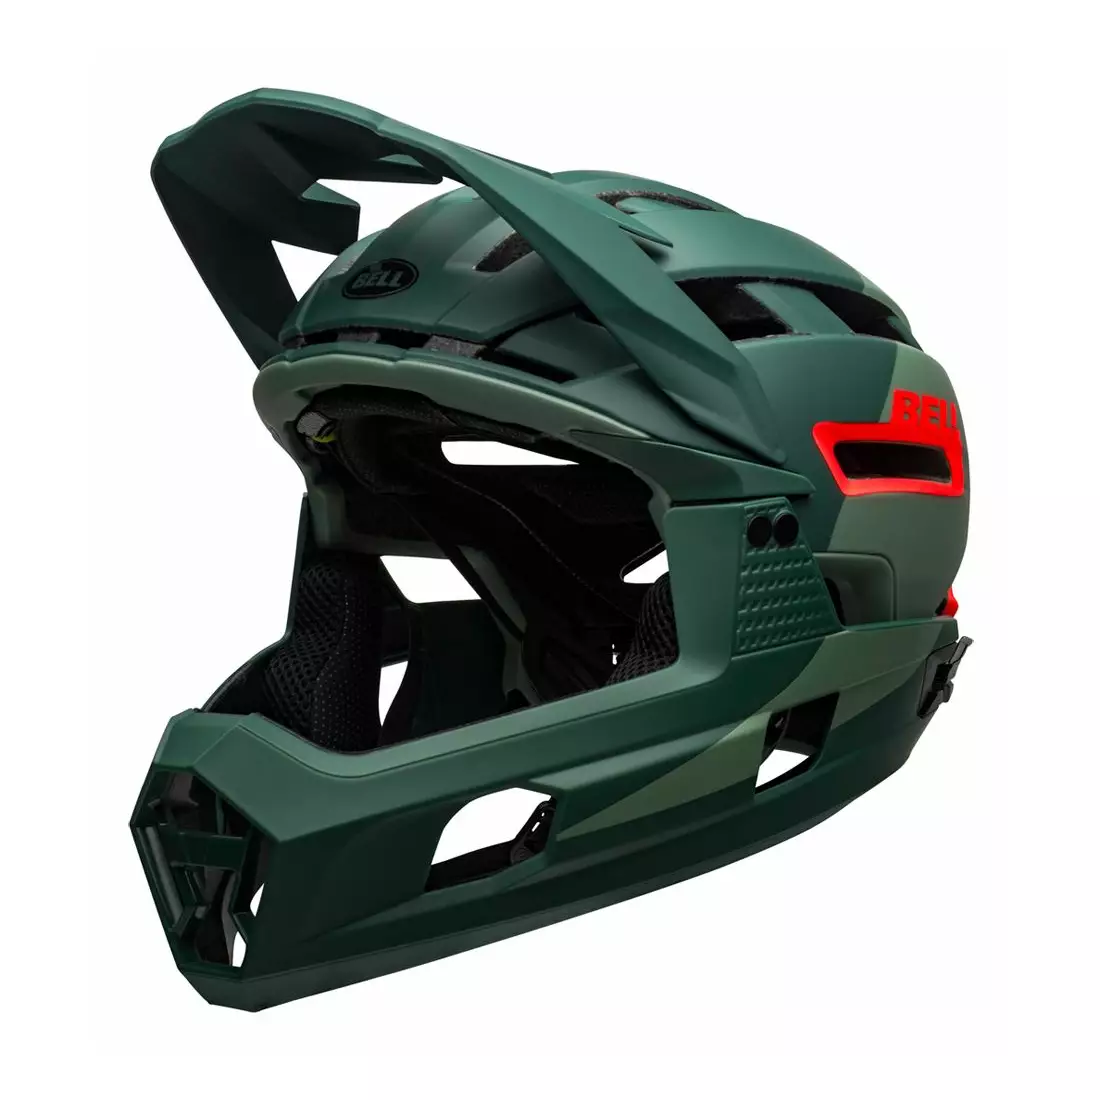 BELL SUPER AIR R MIPS SPHERICAL celotvárová cyklistická prilba, matte gloss green infrared